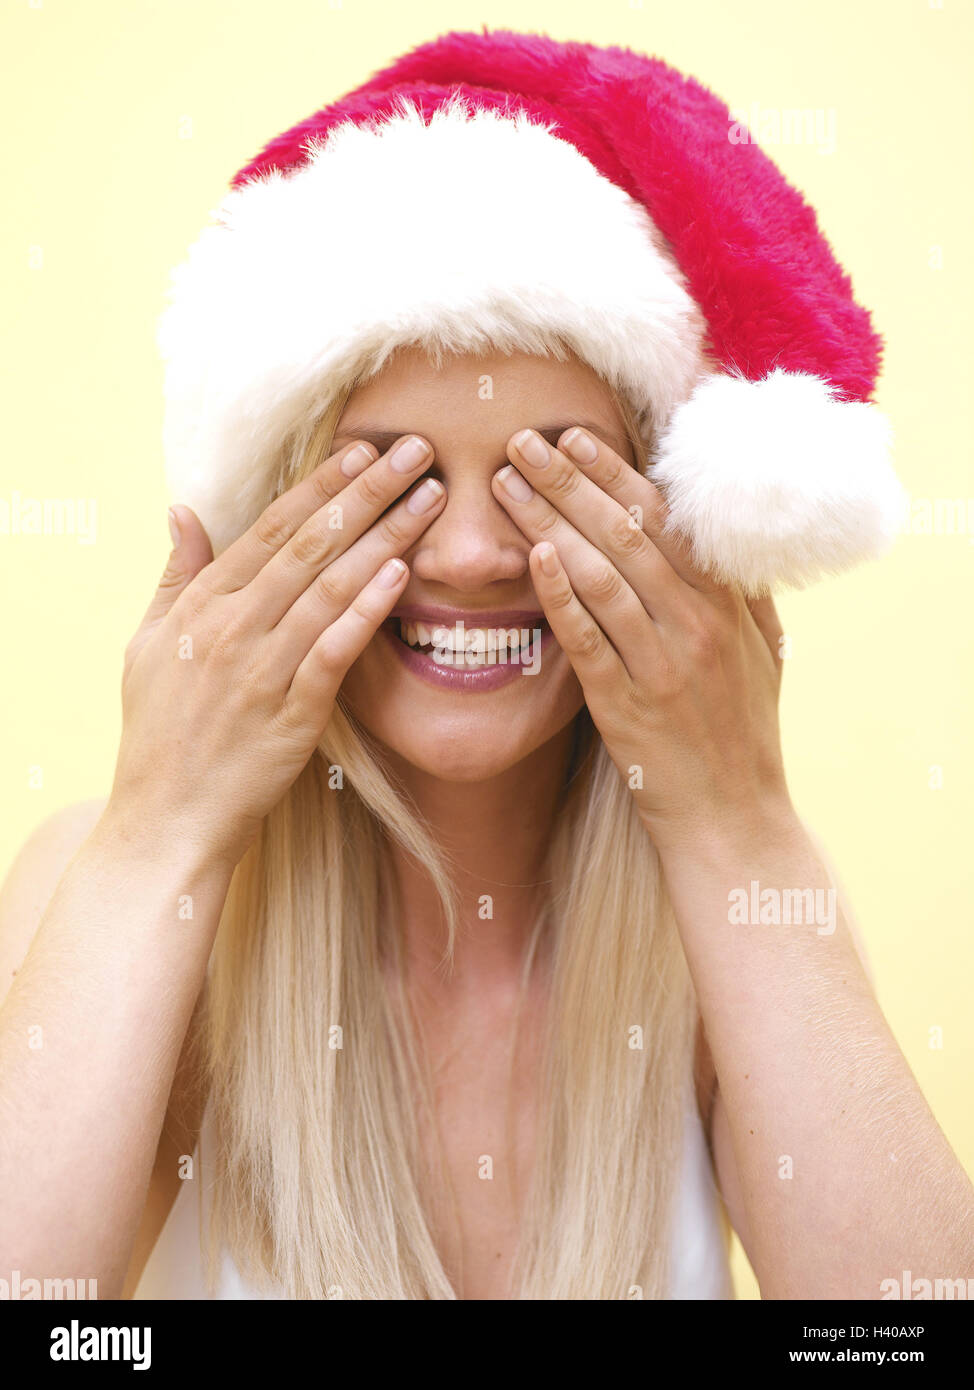 Frau, Blond, die Weihnachtsmütze, Augen, Kopf gerade, Porträt, 20-30 Jahre, Langhaarig, Weihnachten Frau, Hand, Geste, "nichts sehen, lachen", Überraschung, Freude, glücklich, erwartungsvoll, hoffentlich, Prejoy, Vergnügen, Fröhlichkeit, Freude, positive Stimmung, für Weihnachten, C Stockfoto